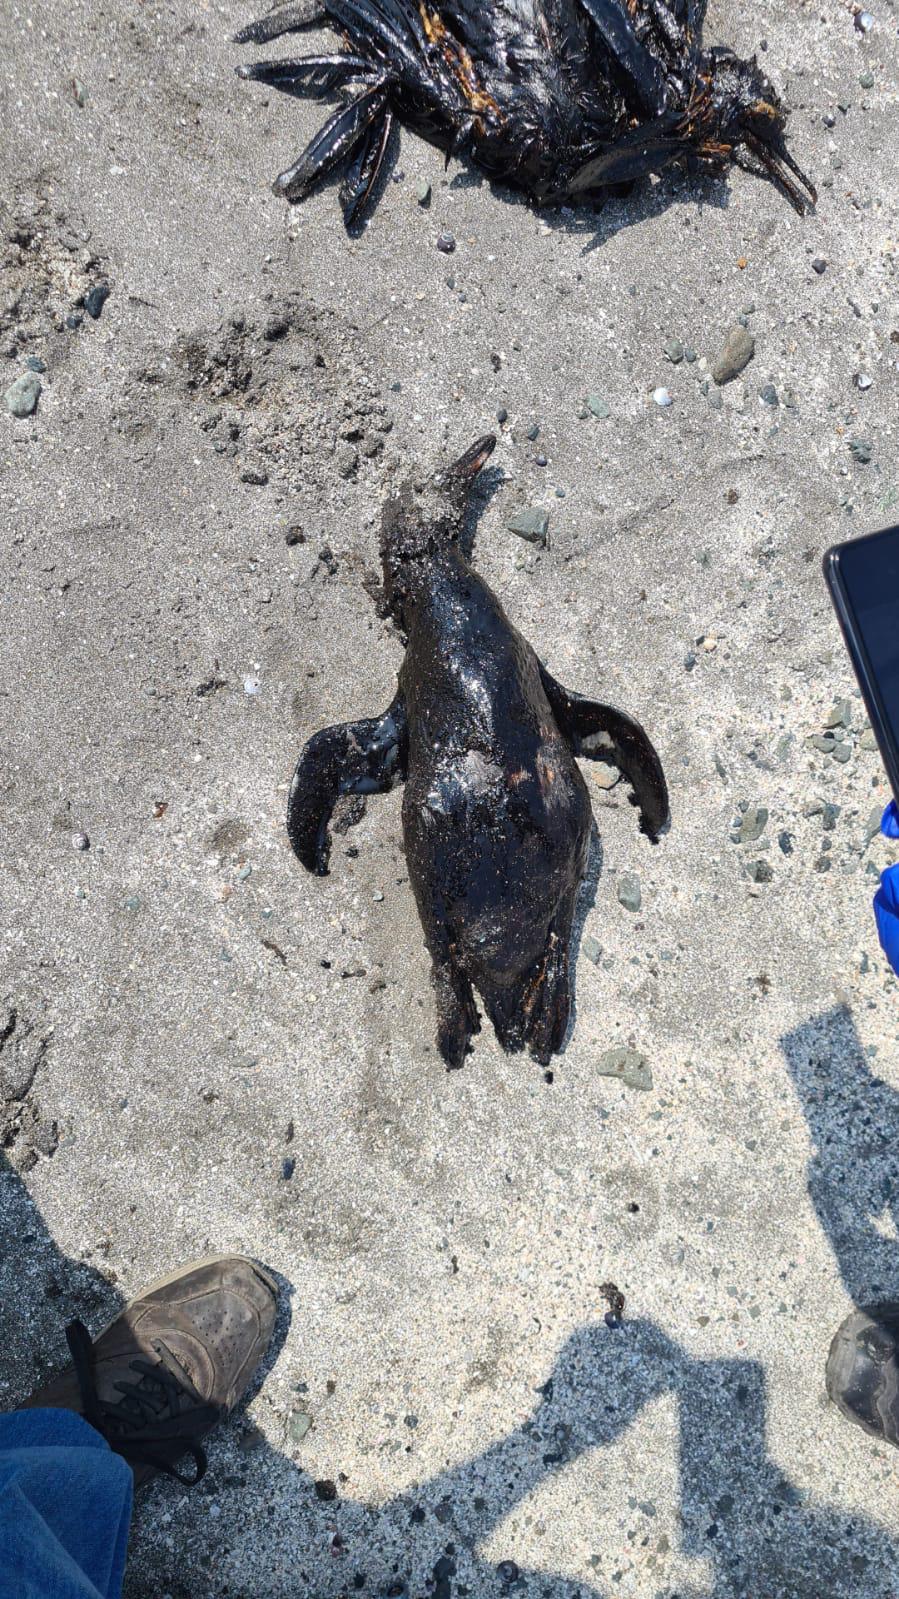 $!Un pingüino y un ave yacen muertos tras el derrame de petróleo ocurrido el 15 de enero.